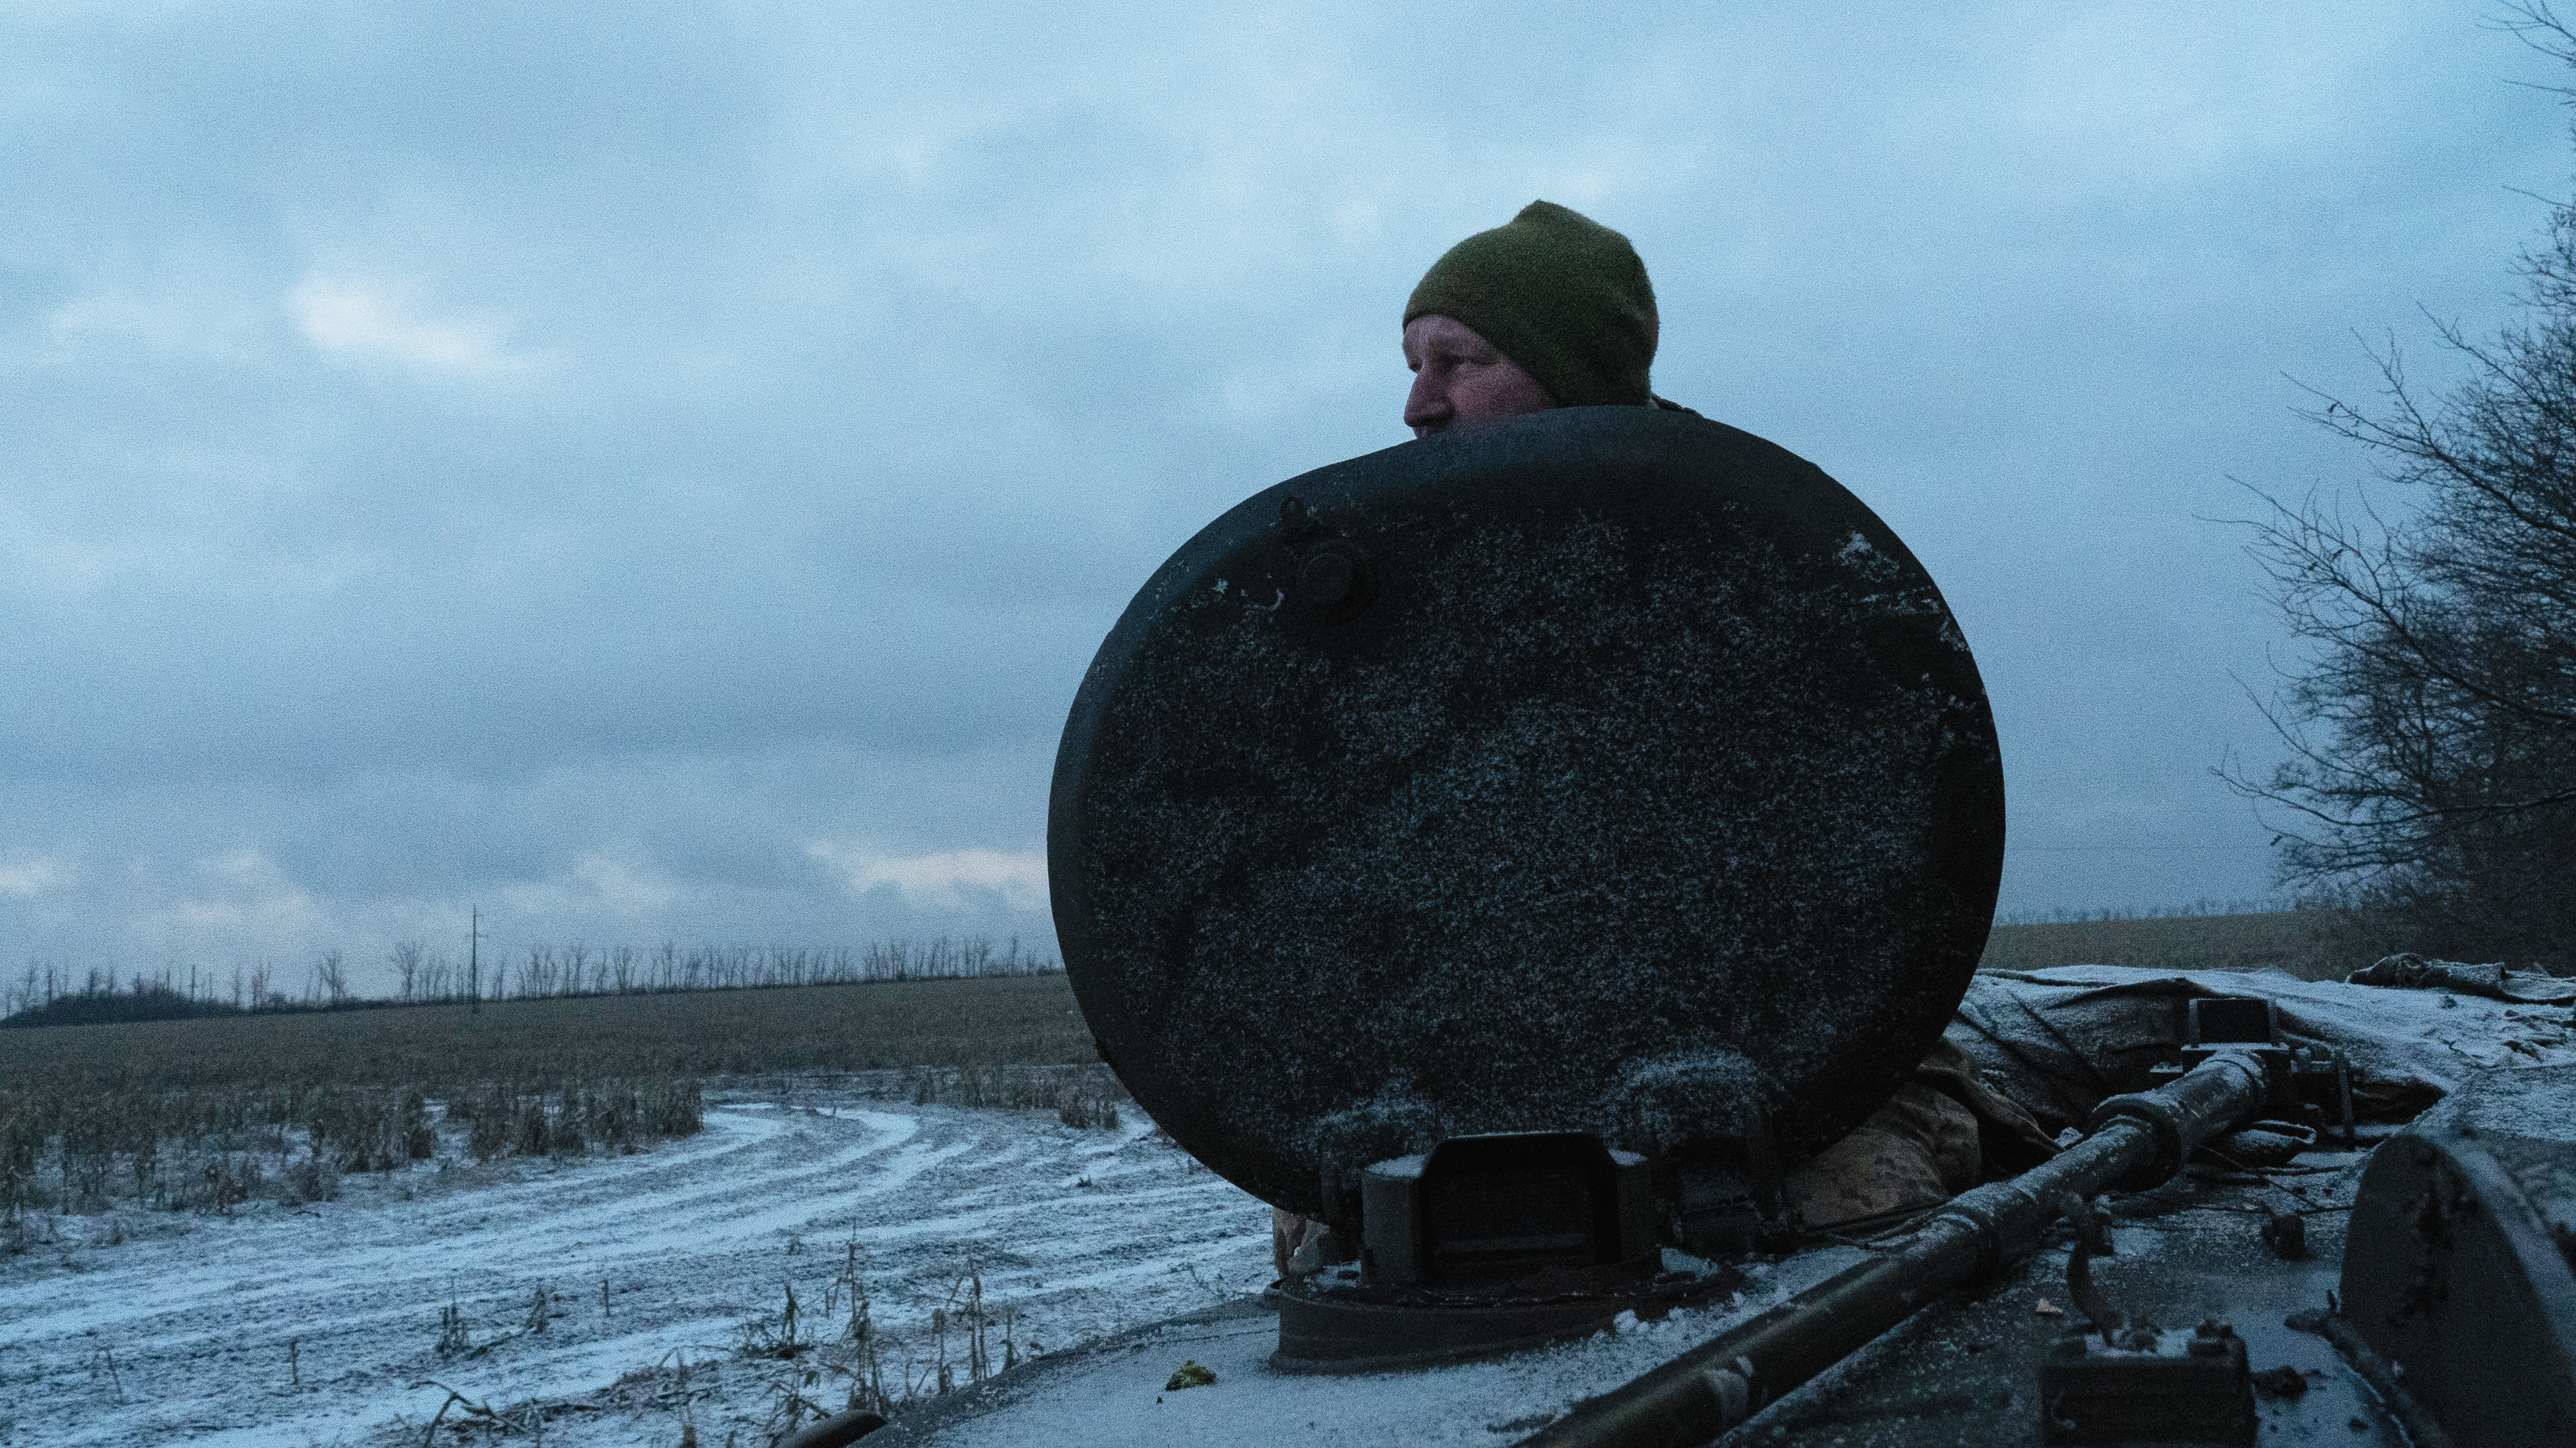 烏克蘭武裝部隊第4坦克旅的一名炮手代號「五角大廈」（Pentagon），正在勘察被白雪覆蓋的前線。他目光專注，定錨在靜謐的風景上。寂寥的冬景與炮手評估地形、尋找精確部署122公釐2C1 Gvozdika榴彈炮的線索時呈現出來的戰略警醒模樣，形成對比。